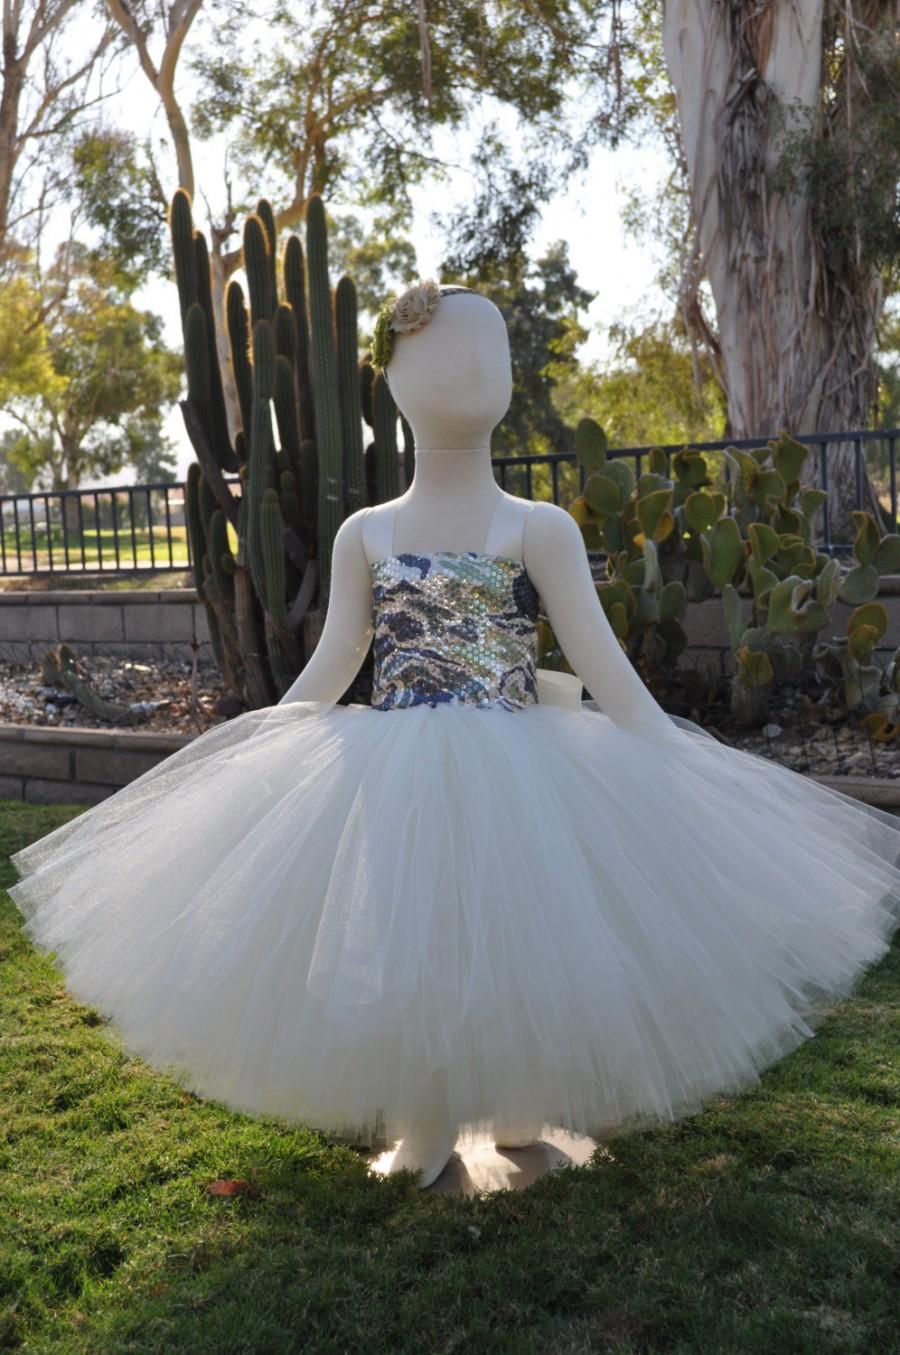 Hochzeit - Country Rustic Flower Girl Dress,Camouflage Flower Girl Dress,Toddler Rustic Dress,Infant Country Dress,Rustic Baby Dress,Rustic Ivory Dress